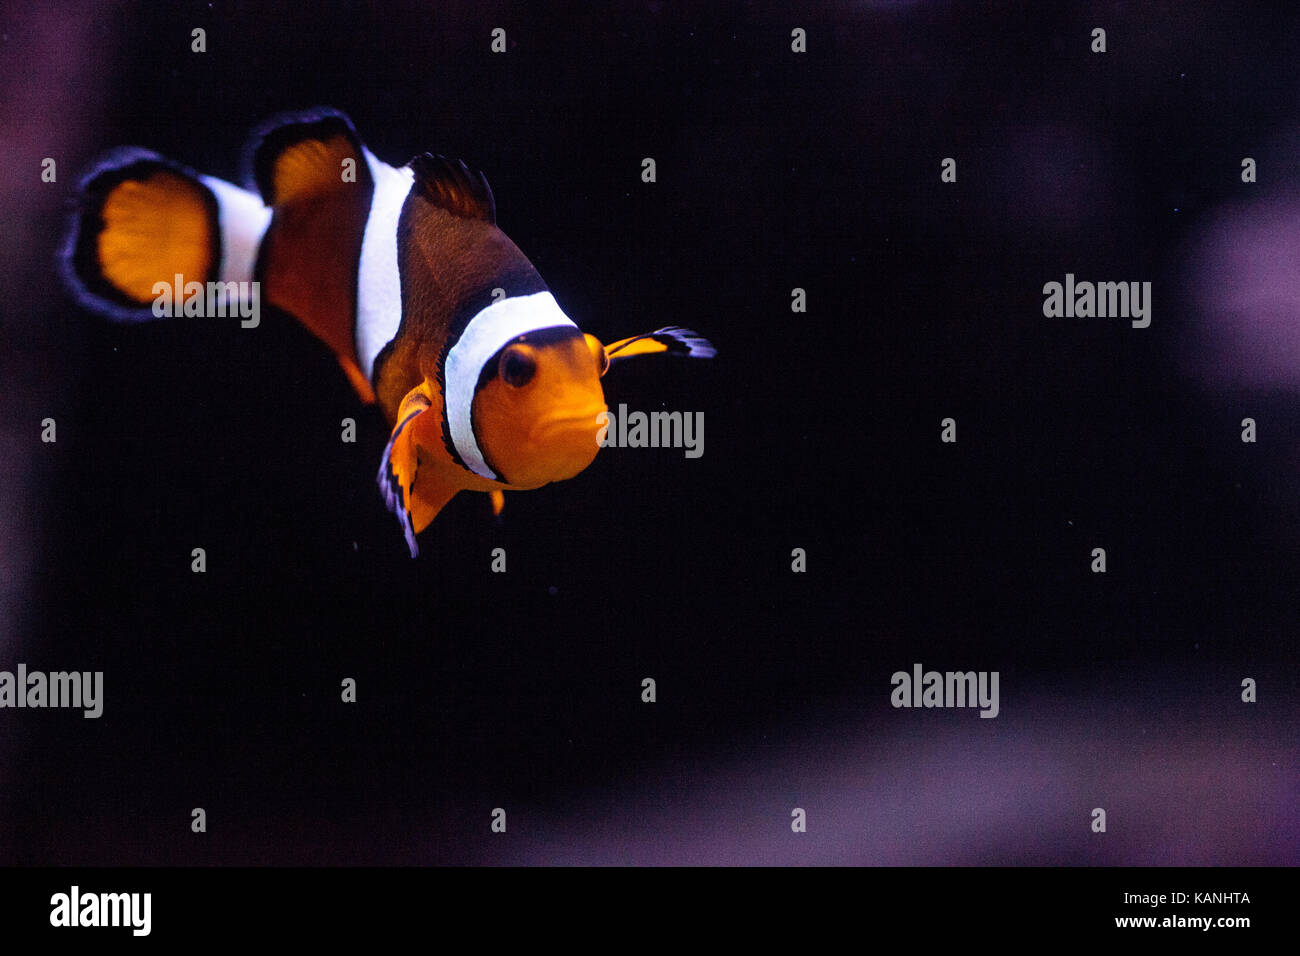 Clownfische, Amphiprioninae, in ein Meerwasseraquarium Fische und Riffe in der Nähe ihrer Host-anemone Stockfoto